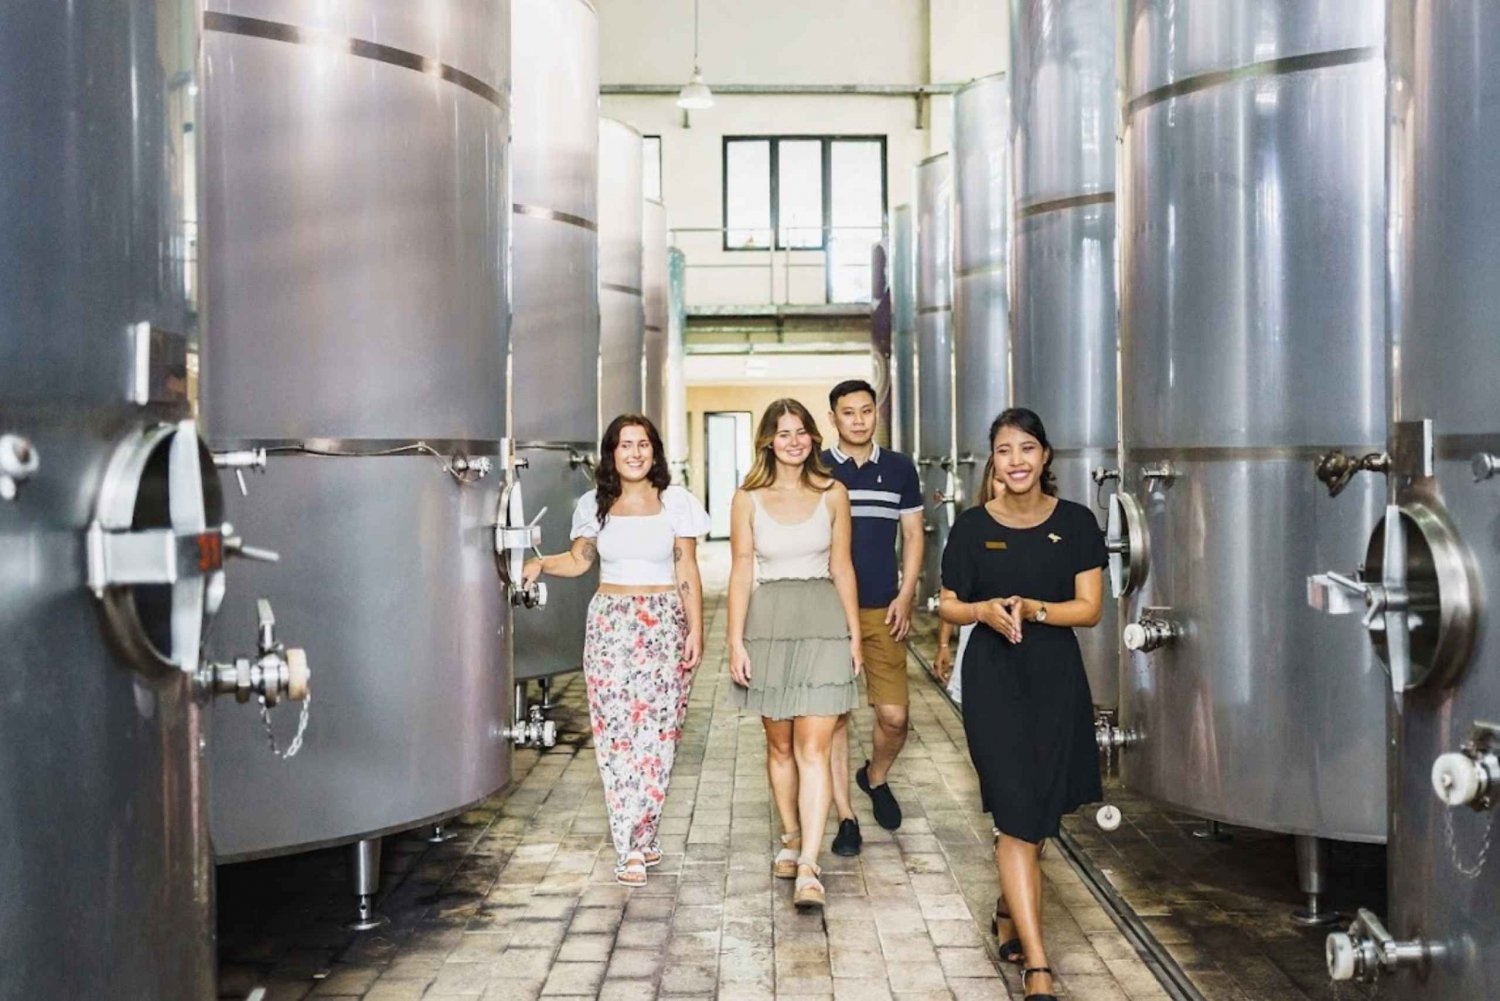 Bali: Tour della fabbrica di degustazione del vino con visita turistica opzionale